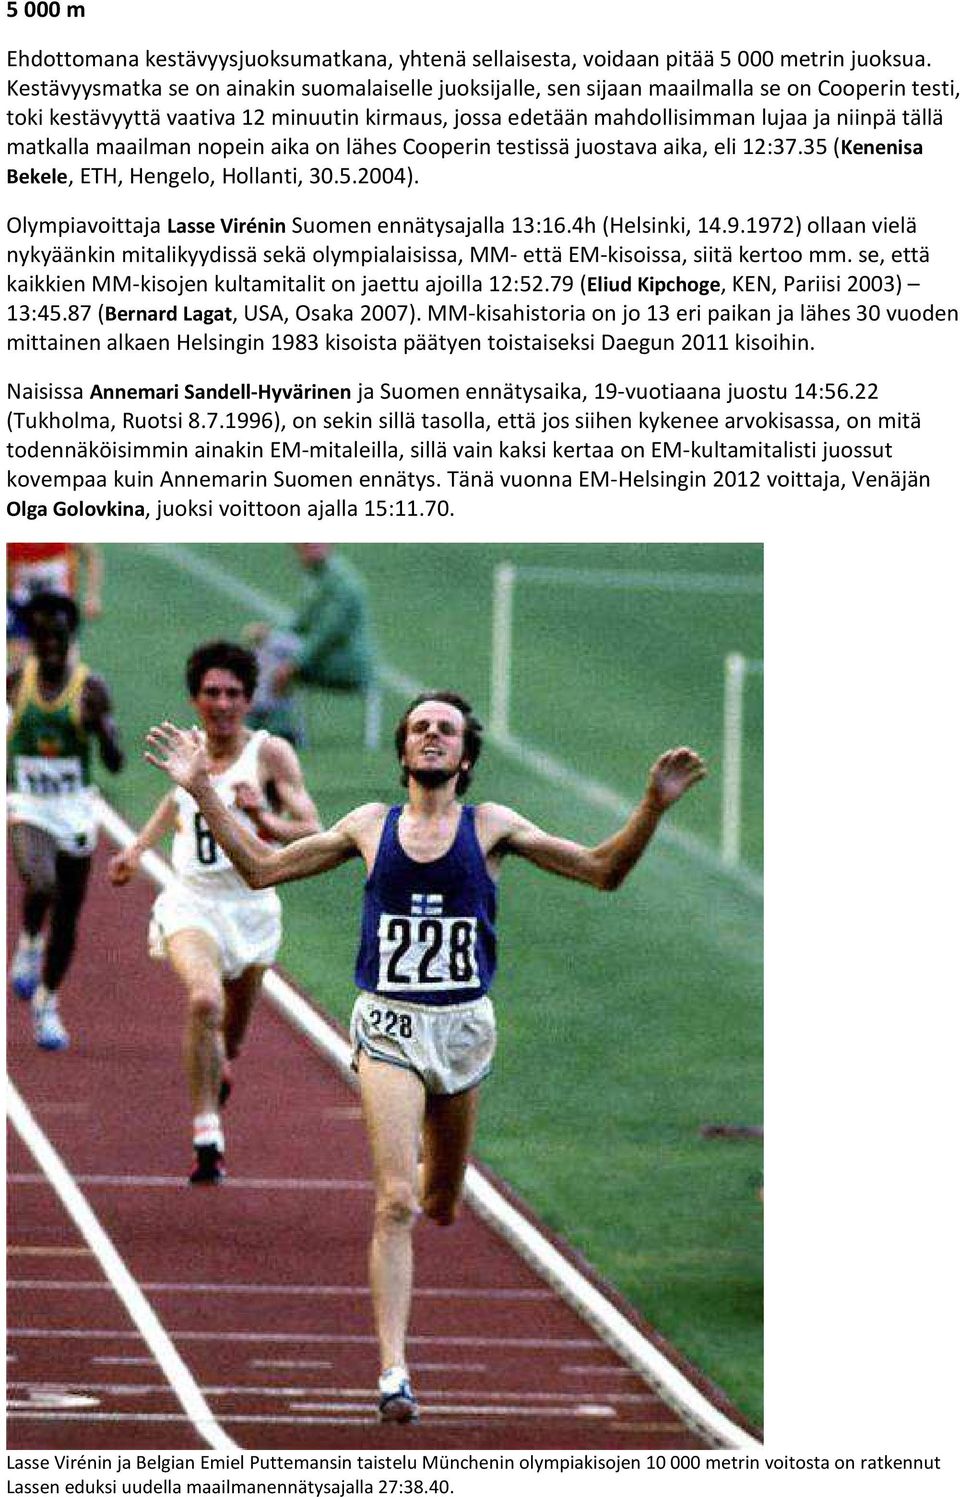 matkalla maailman nopein aika on lähes Cooperin testissä juostava aika, eli 12:37.35 (Kenenisa Bekele, ETH, Hengelo, Hollanti, 30.5.2004). Olympiavoittaja Lasse Virénin Suomen ennätysajalla 13:16.